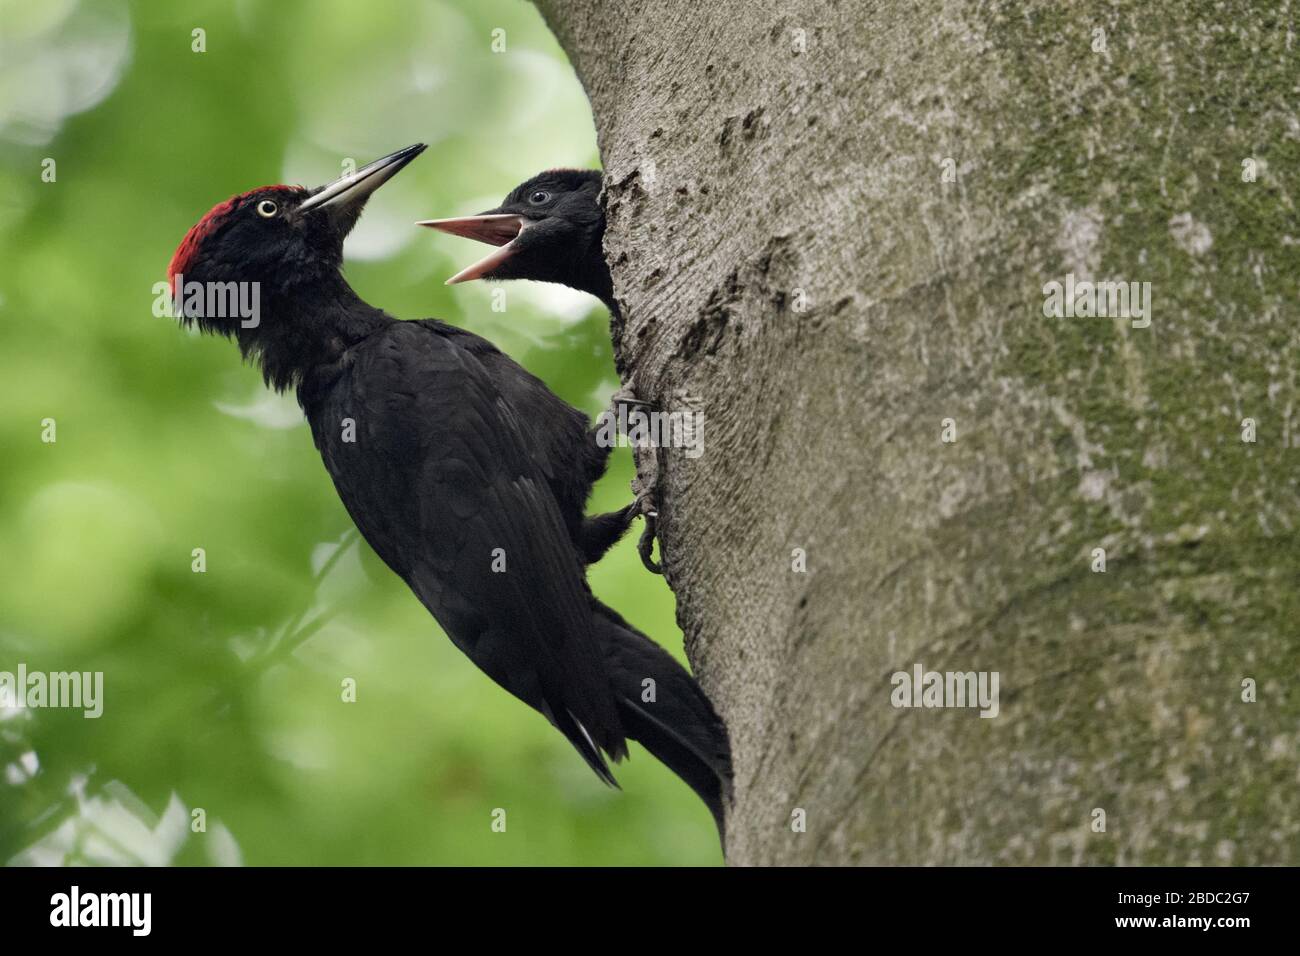 Carpintero negro ( Dryocopus martius ) alimentando a los jóvenes anidando, vida silvestre, Europa. Foto de stock